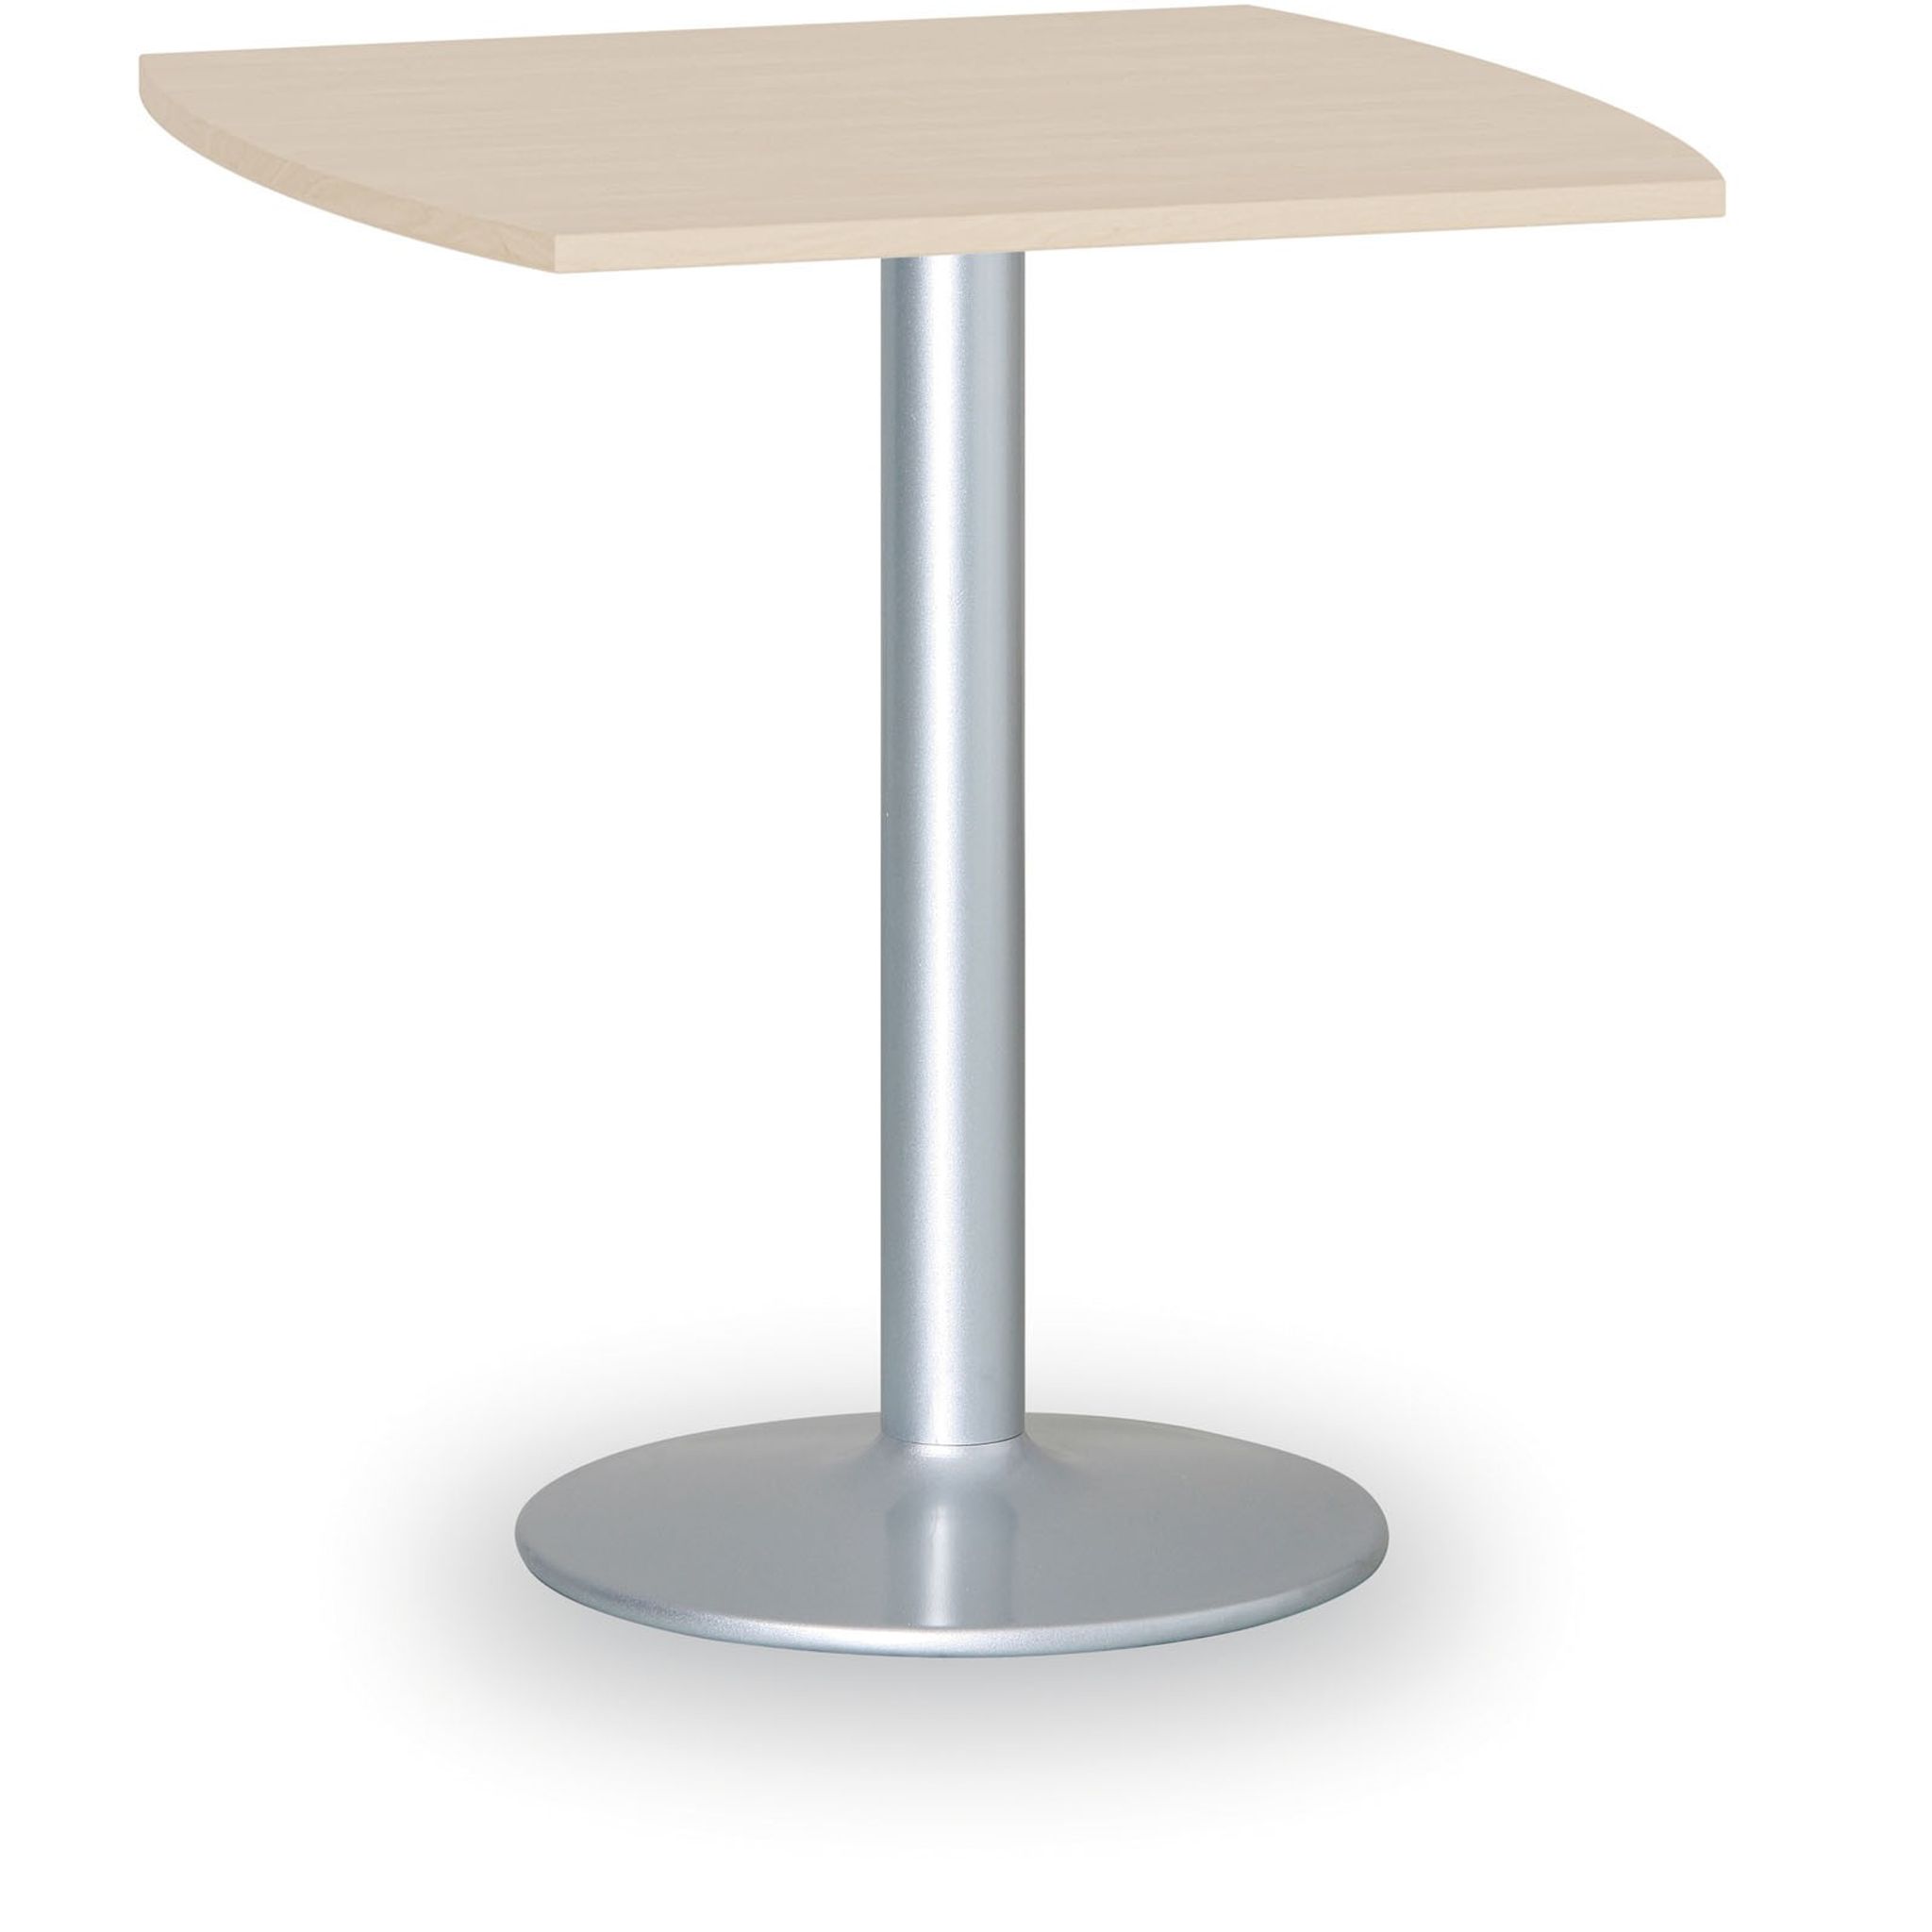 Konferenztisch rund, Bistrotisch FILIP II, 66x66 cm, graue Fußgestell, Platte Graphit